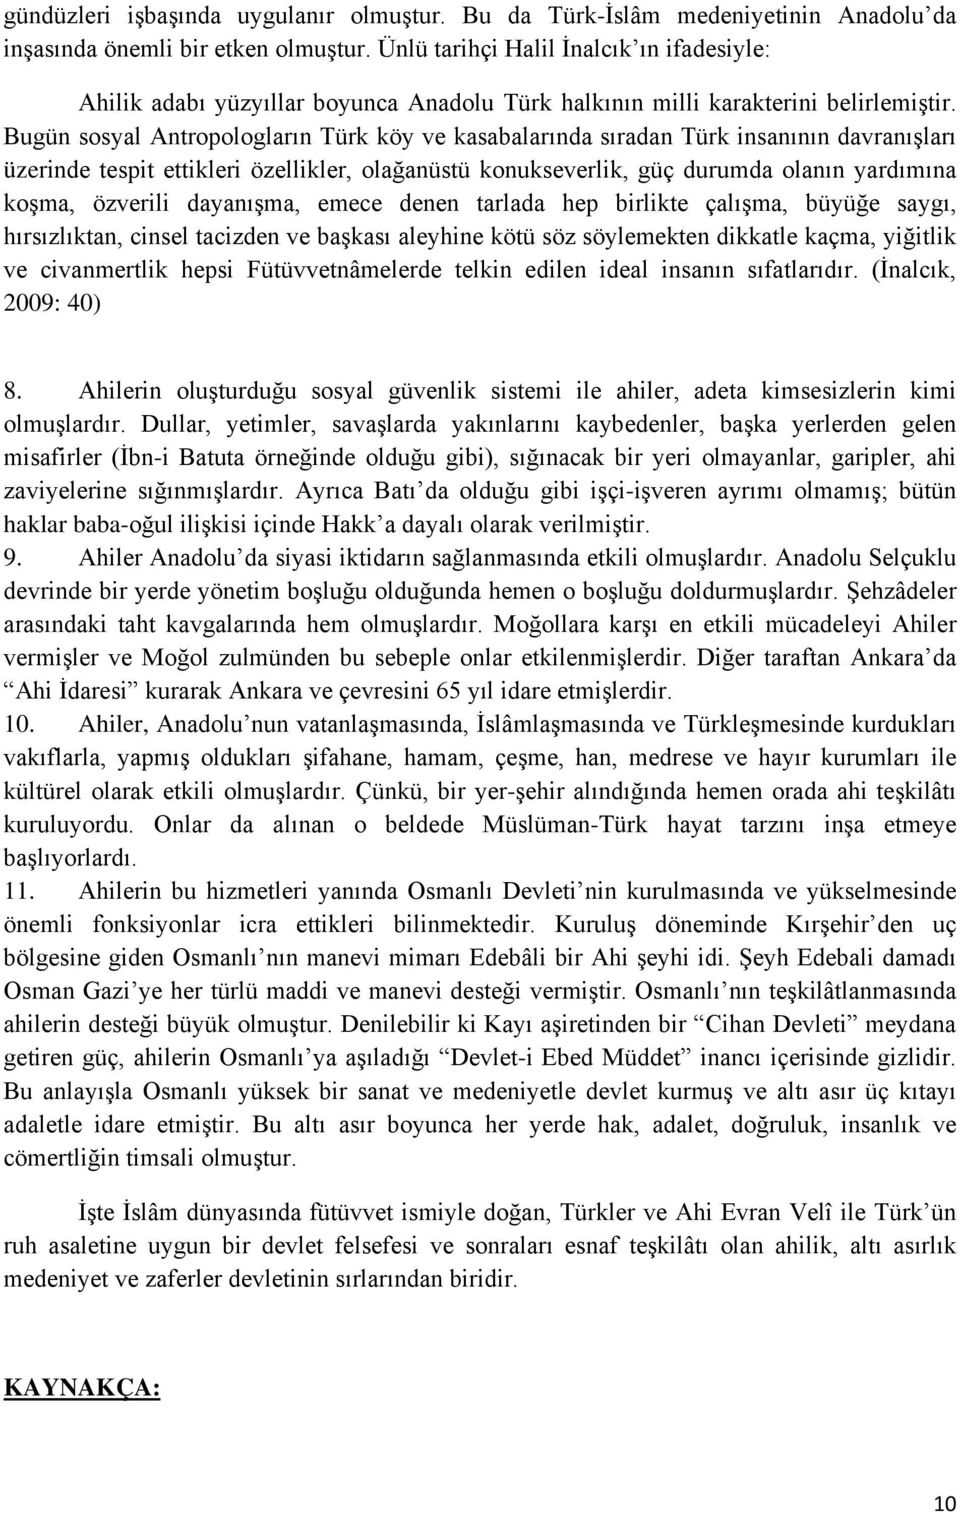 Bugün sosyal Antropologların Türk köy ve kasabalarında sıradan Türk insanının davranışları üzerinde tespit ettikleri özellikler, olağanüstü konukseverlik, güç durumda olanın yardımına koşma, özverili